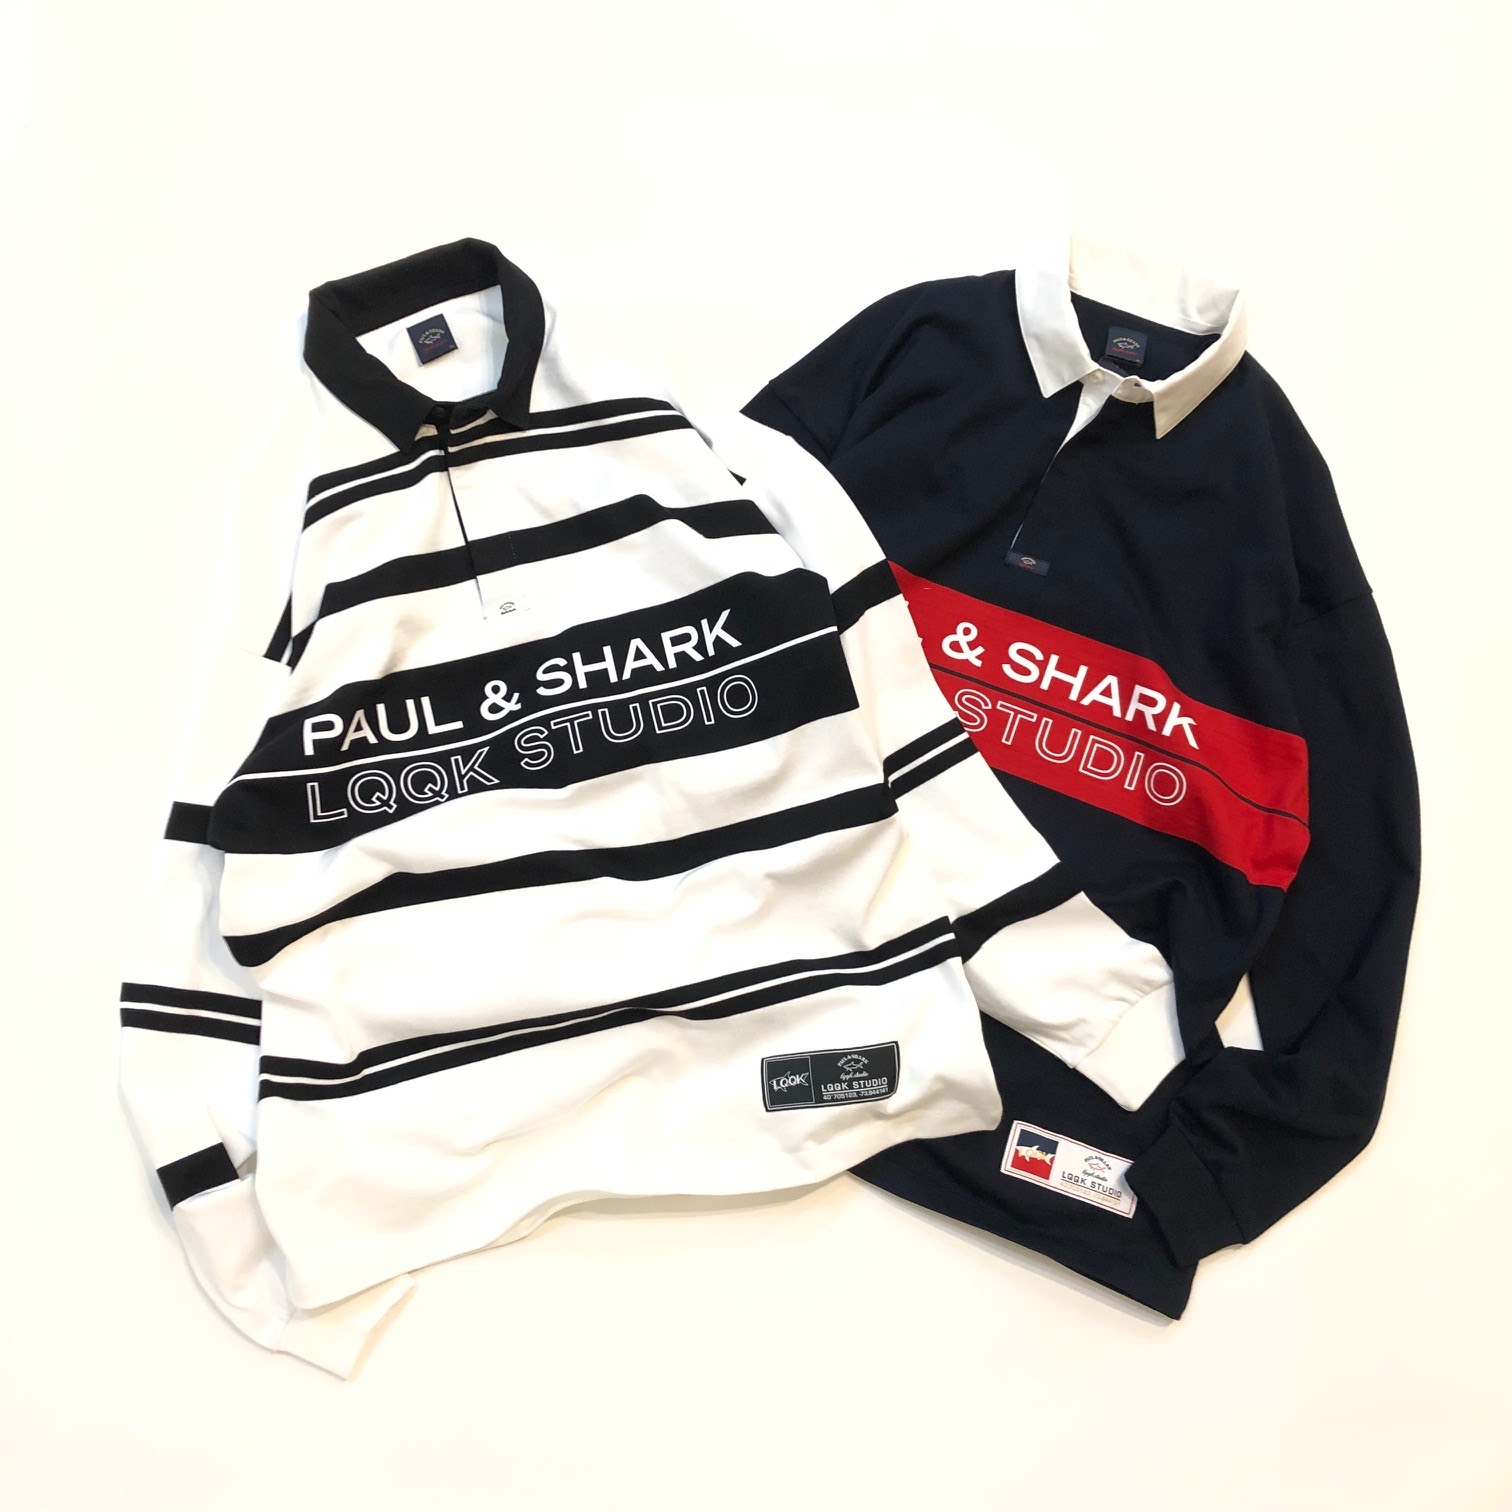 メンズ Supreme - PAUL & SHARK LQQK 半袖Tシャツの通販 by SH2017's shop｜シュプリームならラクマ